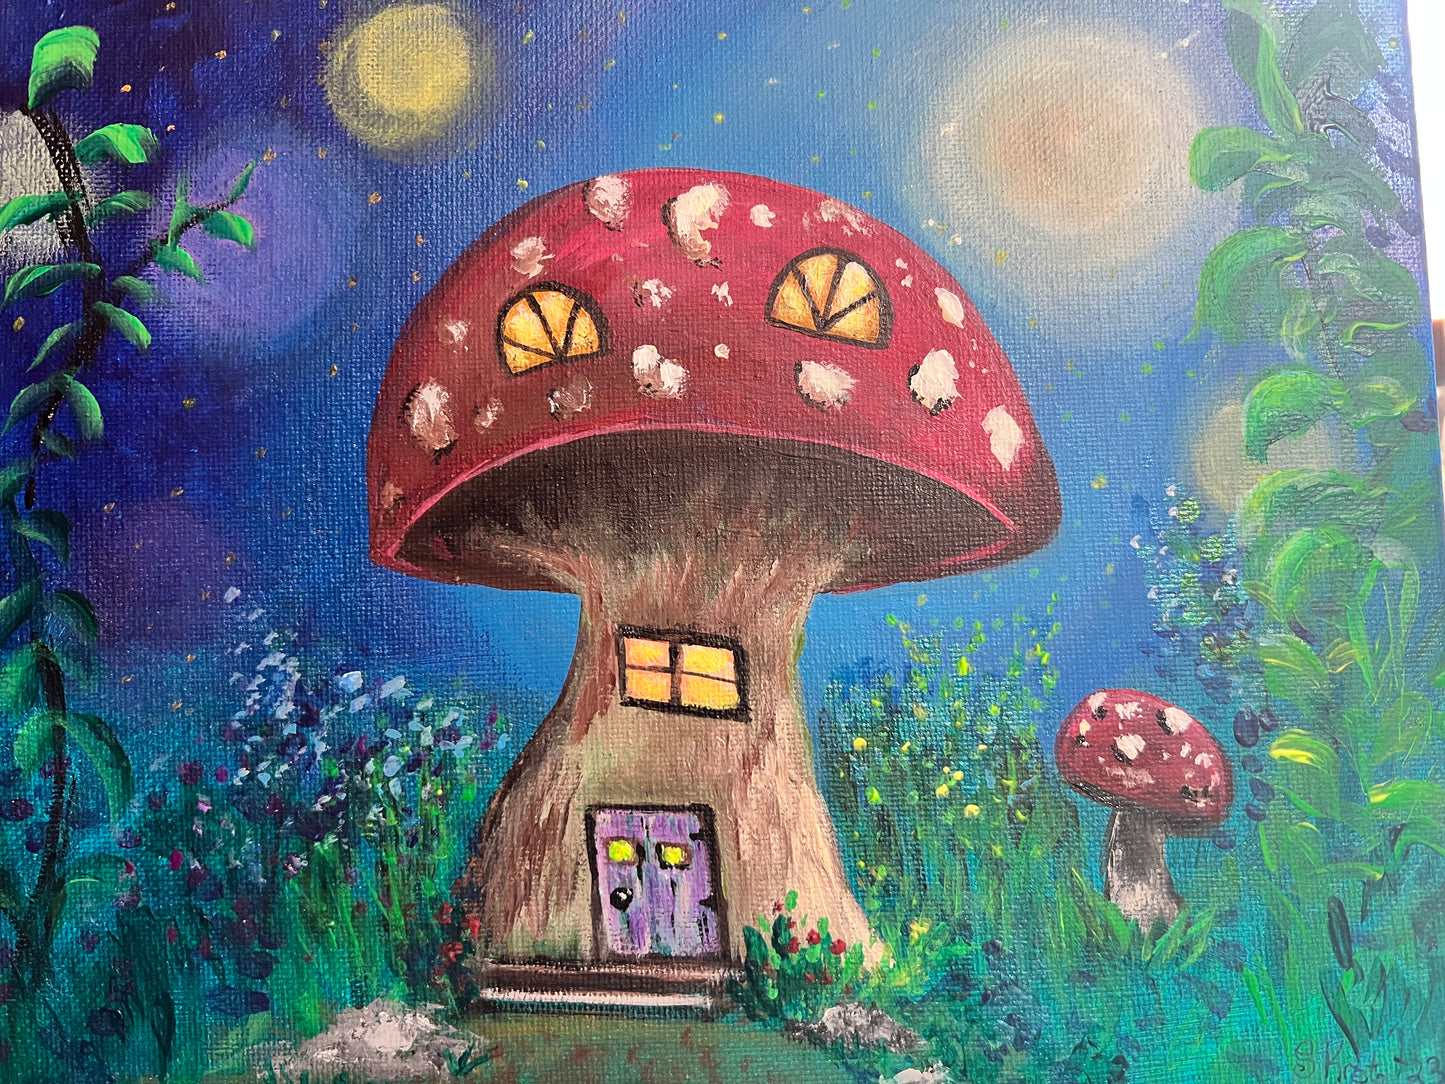 Fairy Mushroom House Original Acrylic Painting on Canvas 8x10 inch